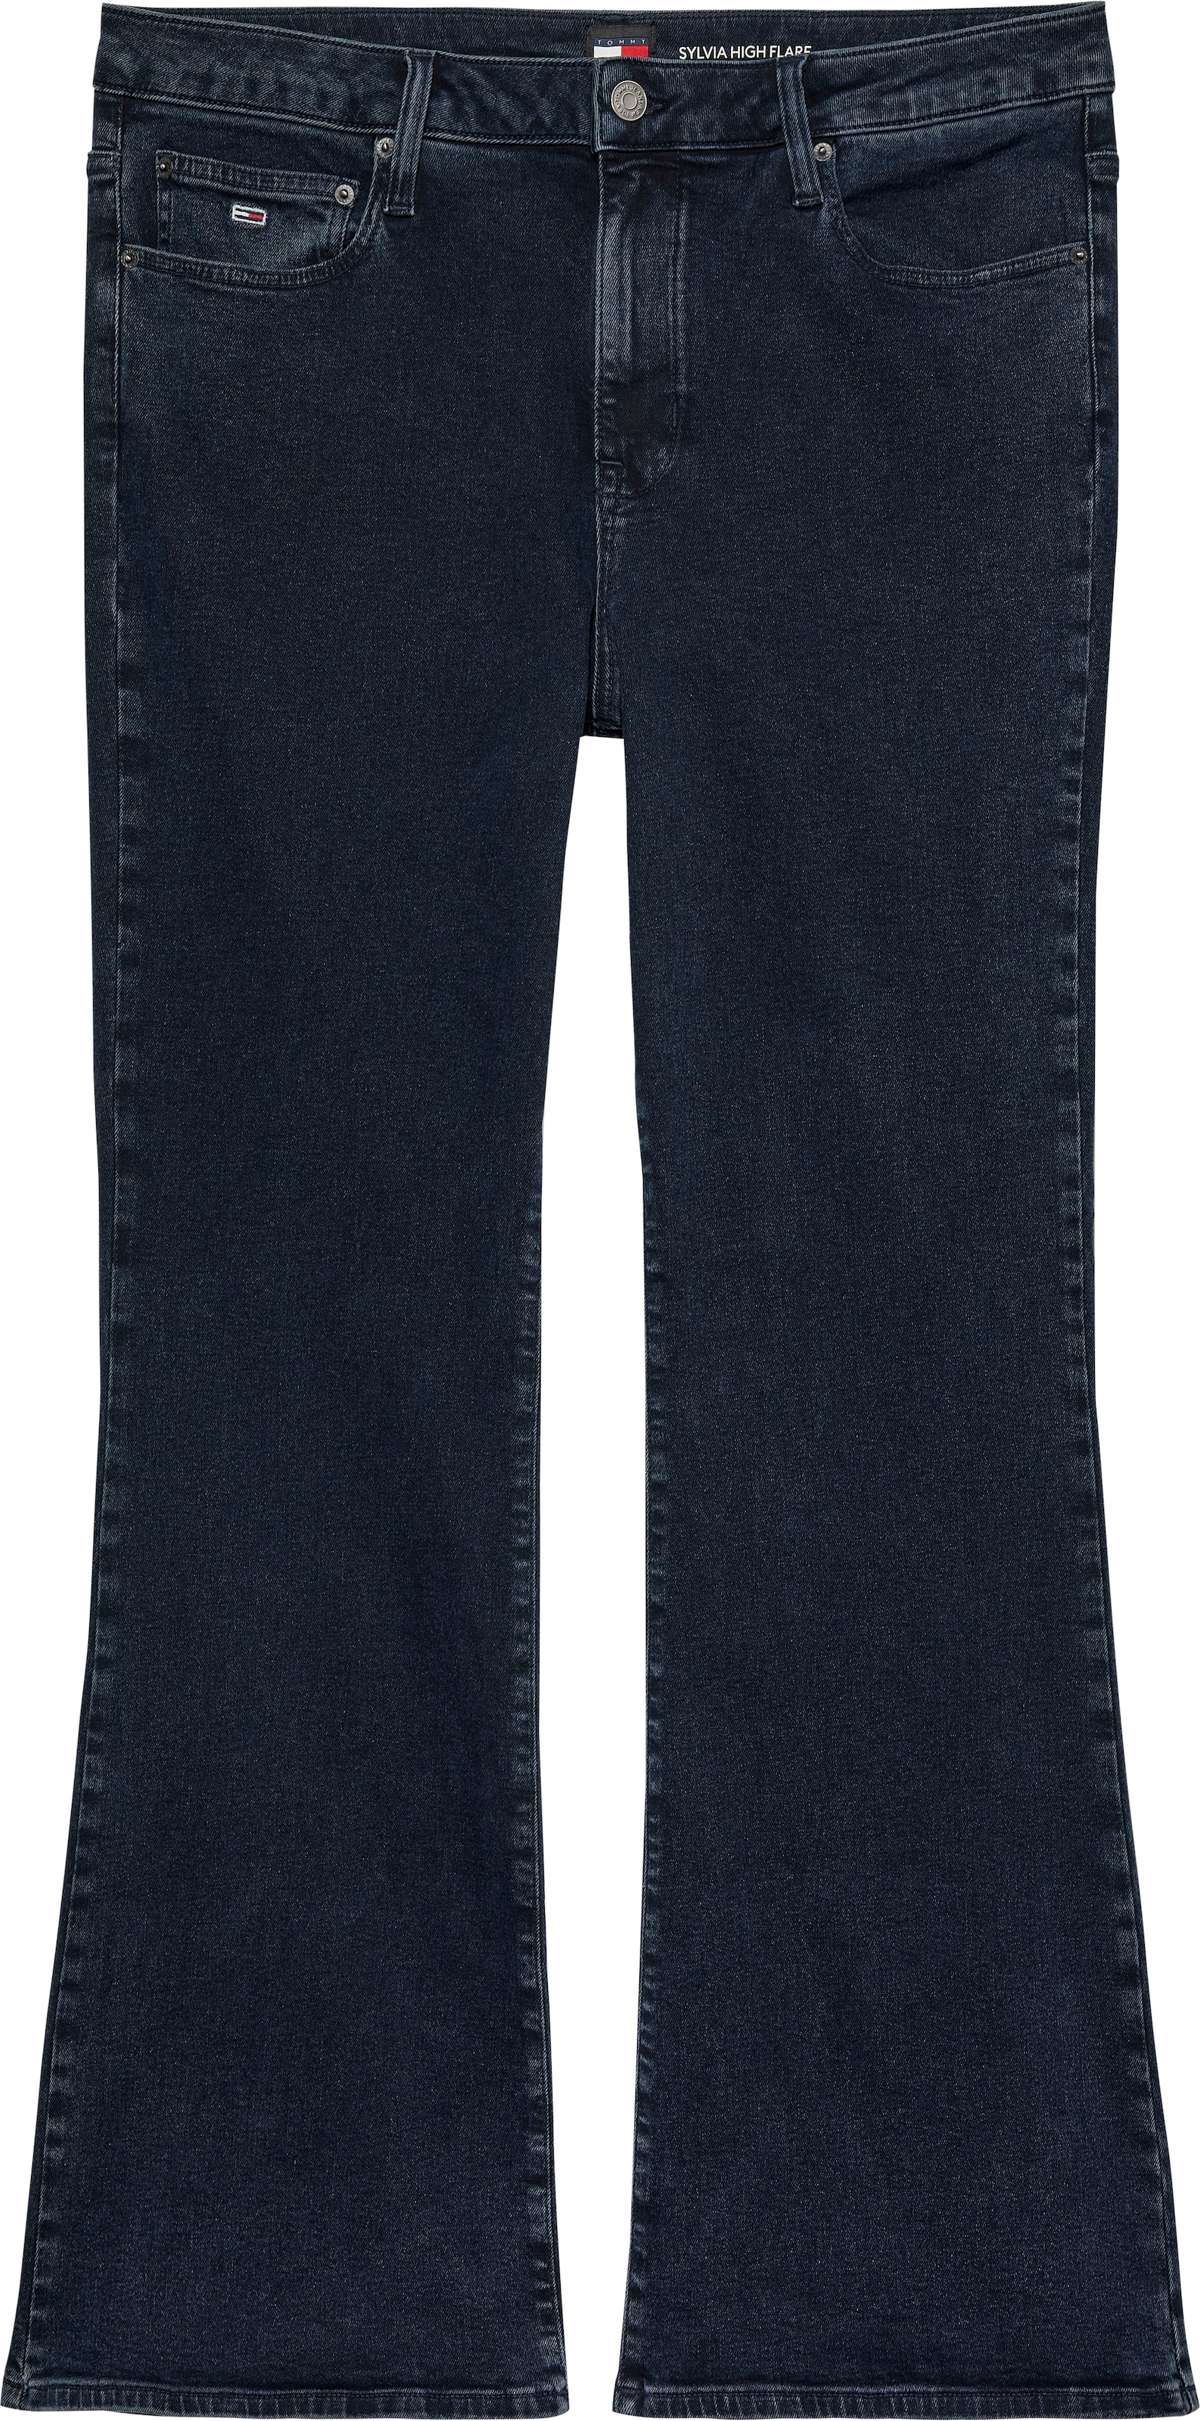 Расклешенные джинсы больших размеров с пятью карманами.